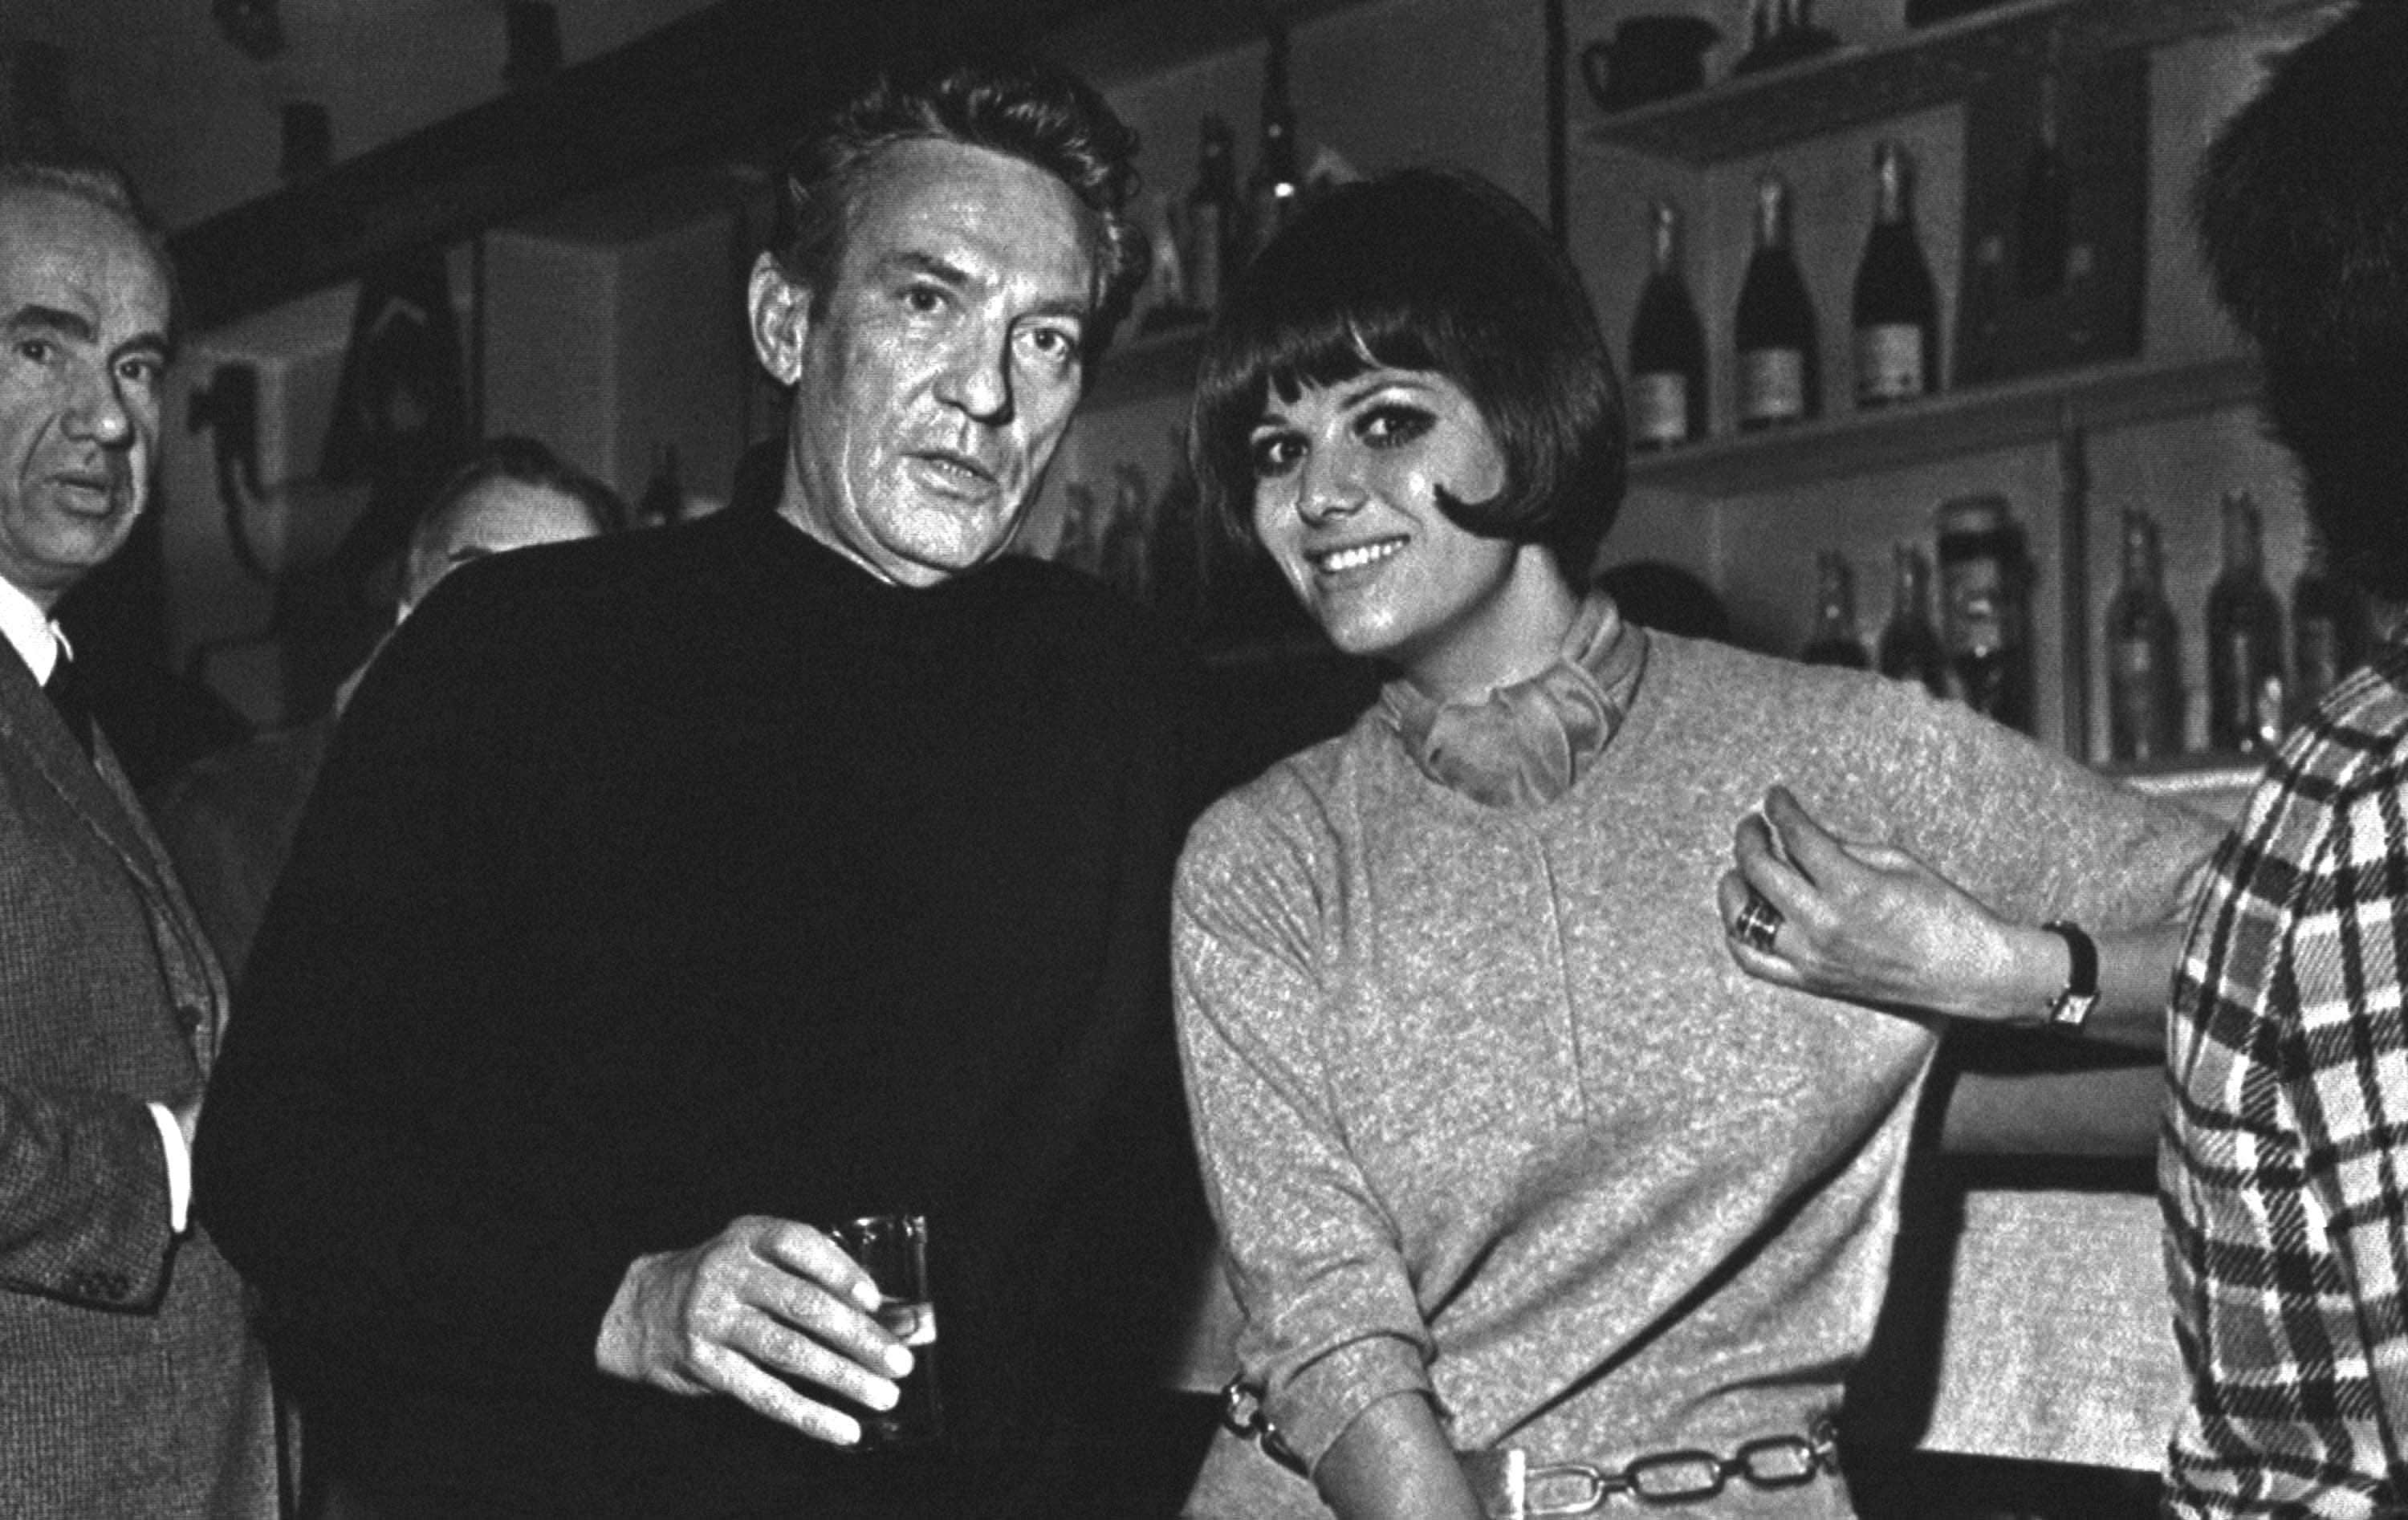 השחקנית האיטלקייה קלאודיה קרדינלה לצד השחקן האוסטרלי פיטר פינץ&#8217; במלון מטרופול במוסקבה, 20 בפברואר 1968 (צילום: AP Photo)